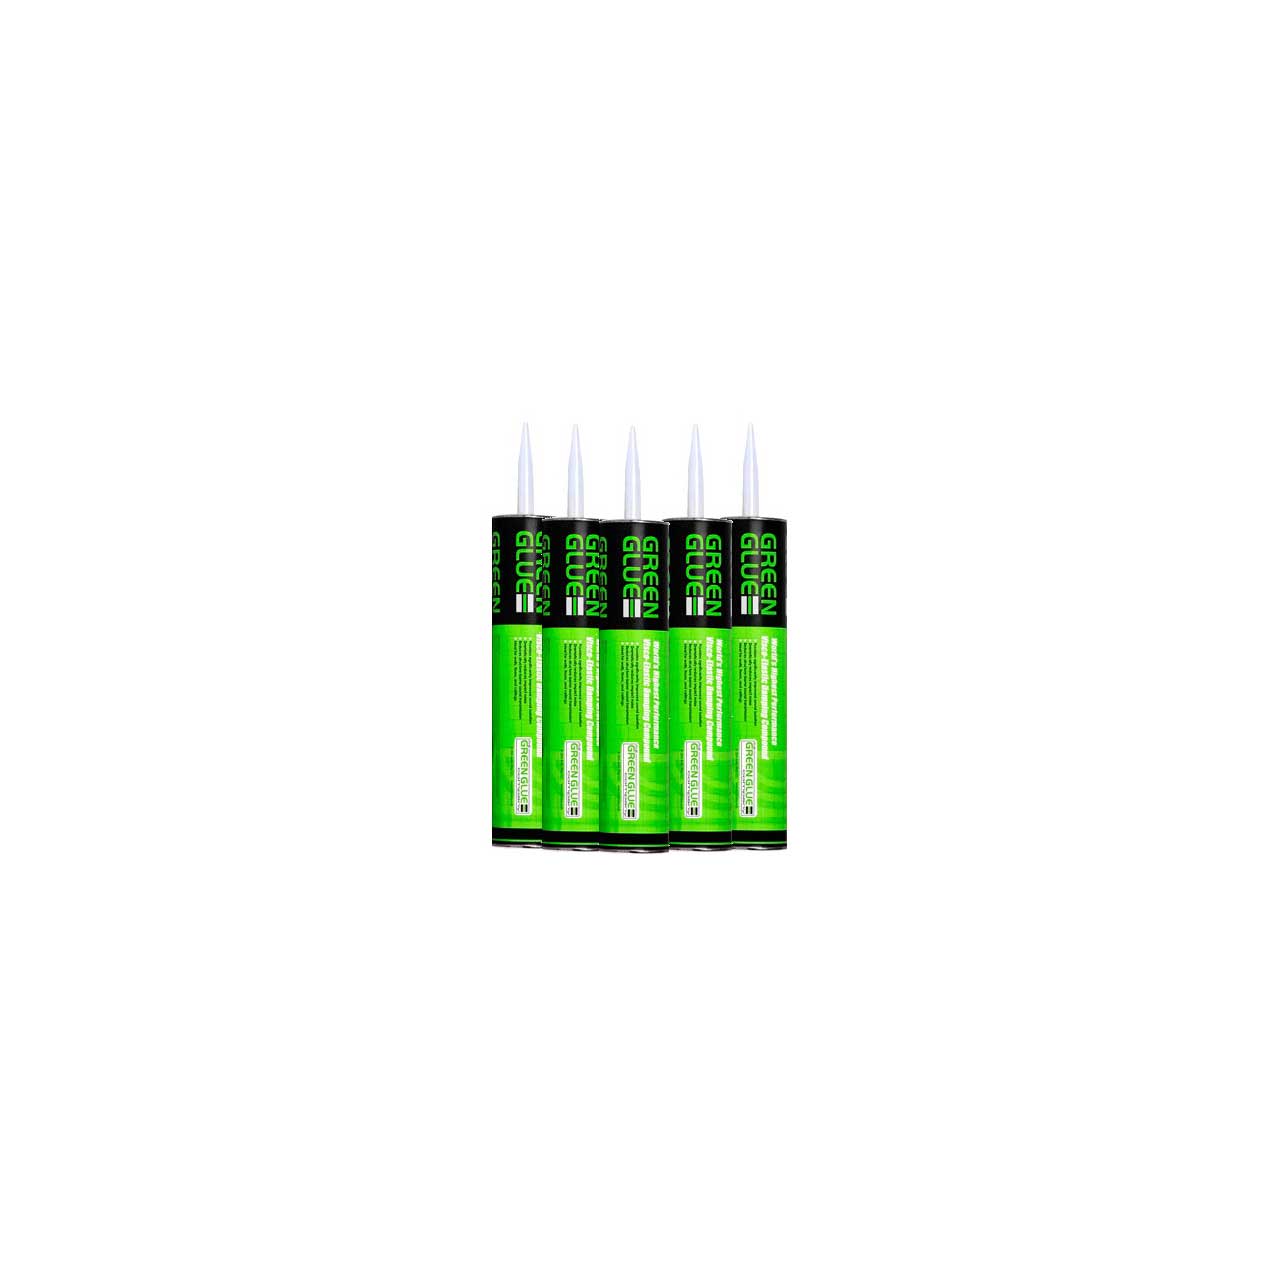 Green Glue RGG400100 Acoustic Glue 28 Ounce Tube - 12 Pack